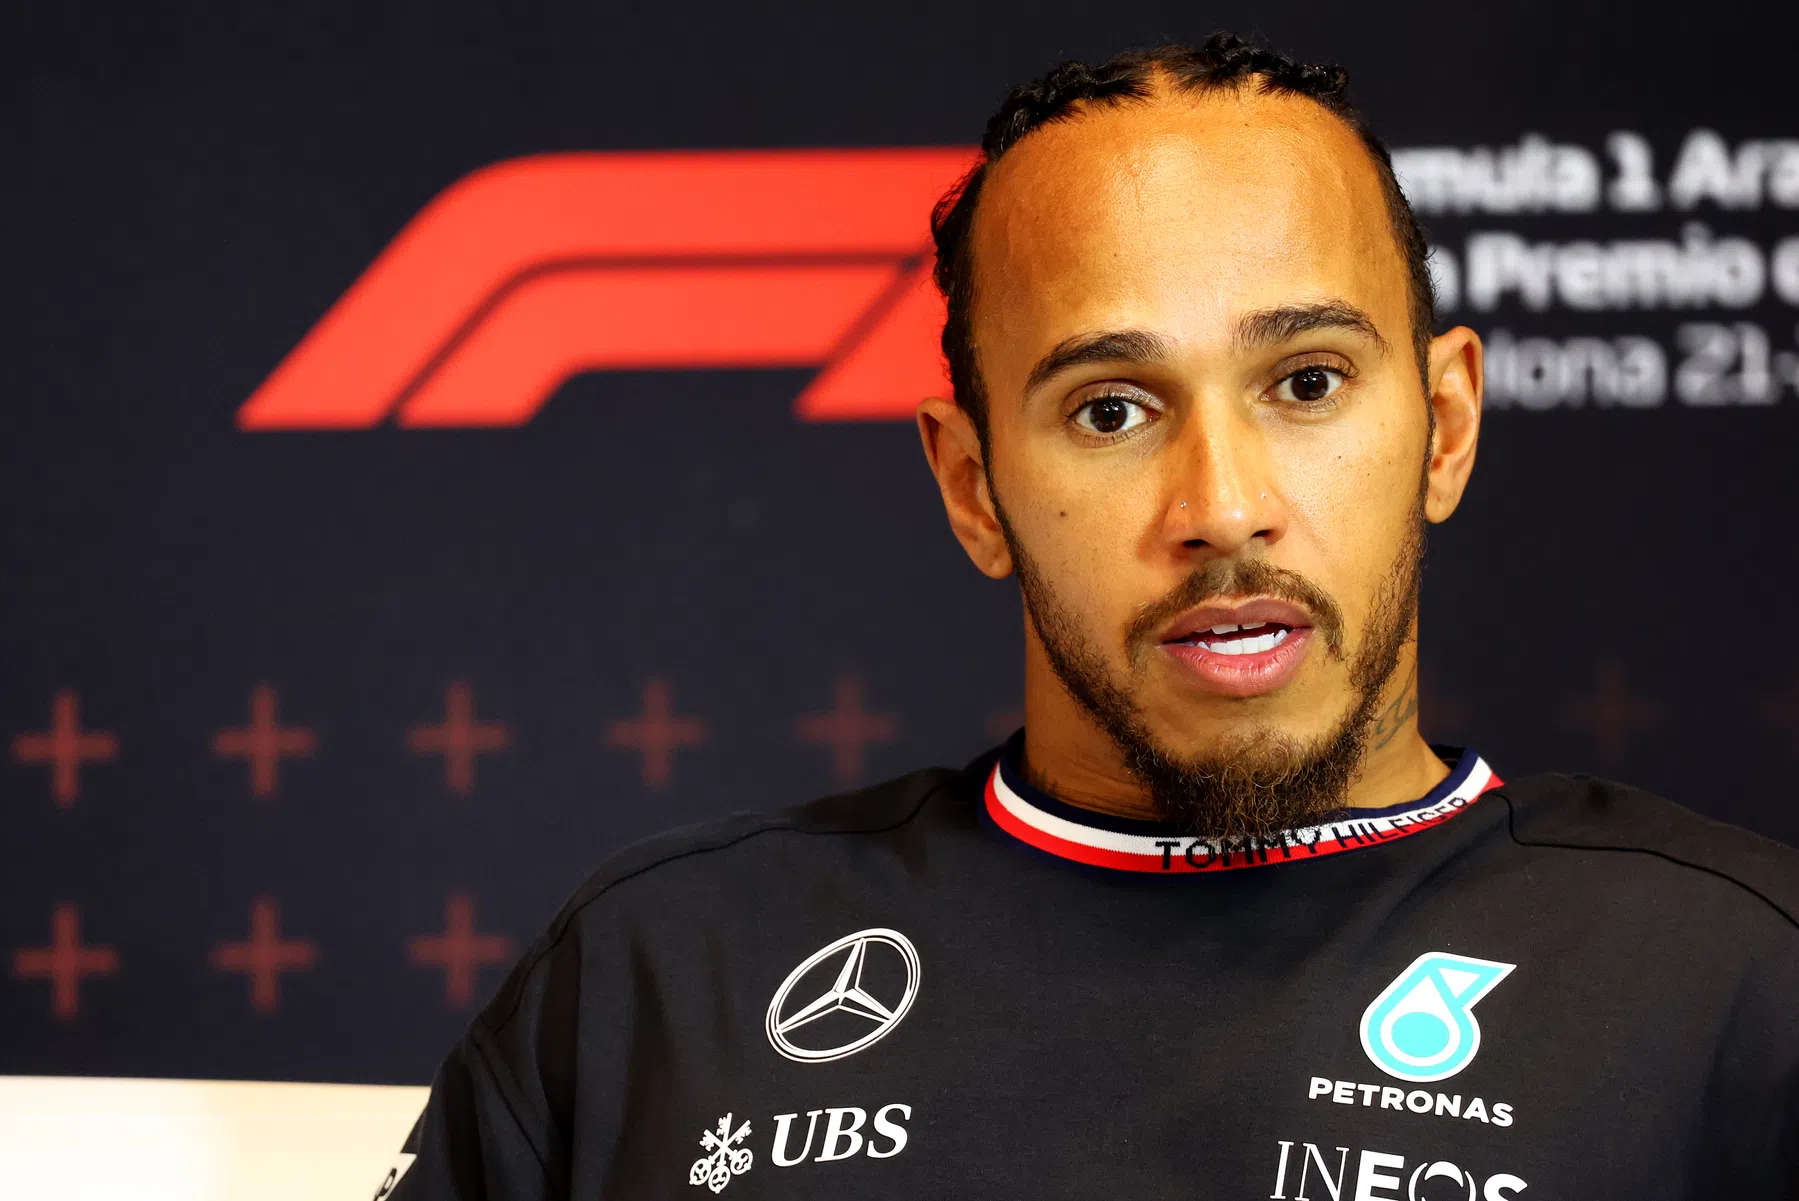 Les commissaires annoncent le verdict pour Lewis Hamilton et Mercedes après l'incident de Q3